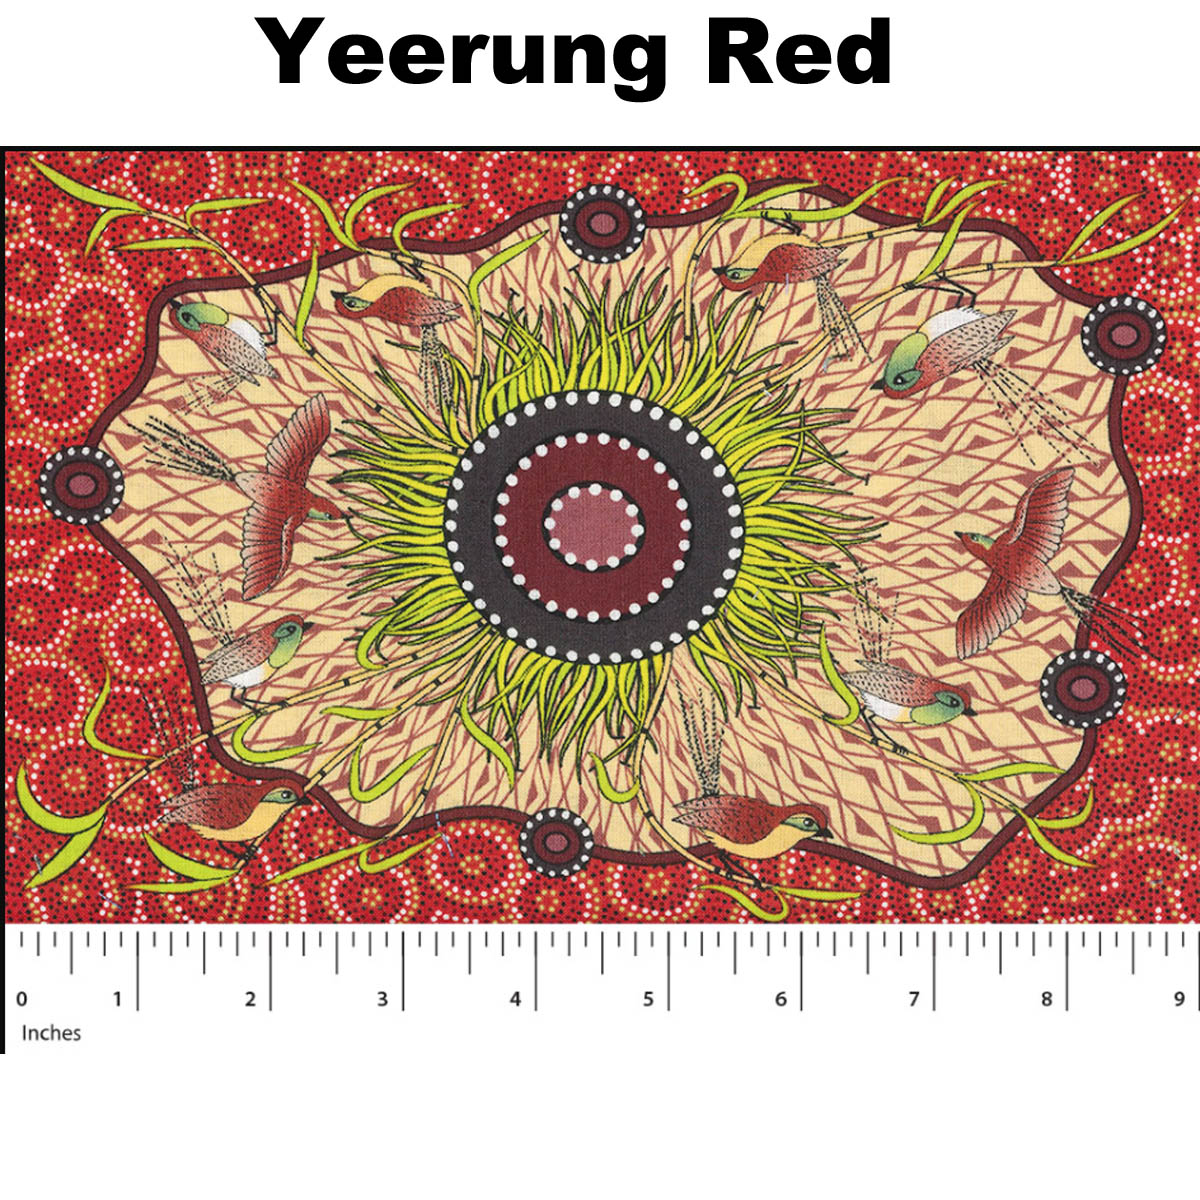 YEERUNG RED by Australian Aboriginal Artist Nambooka